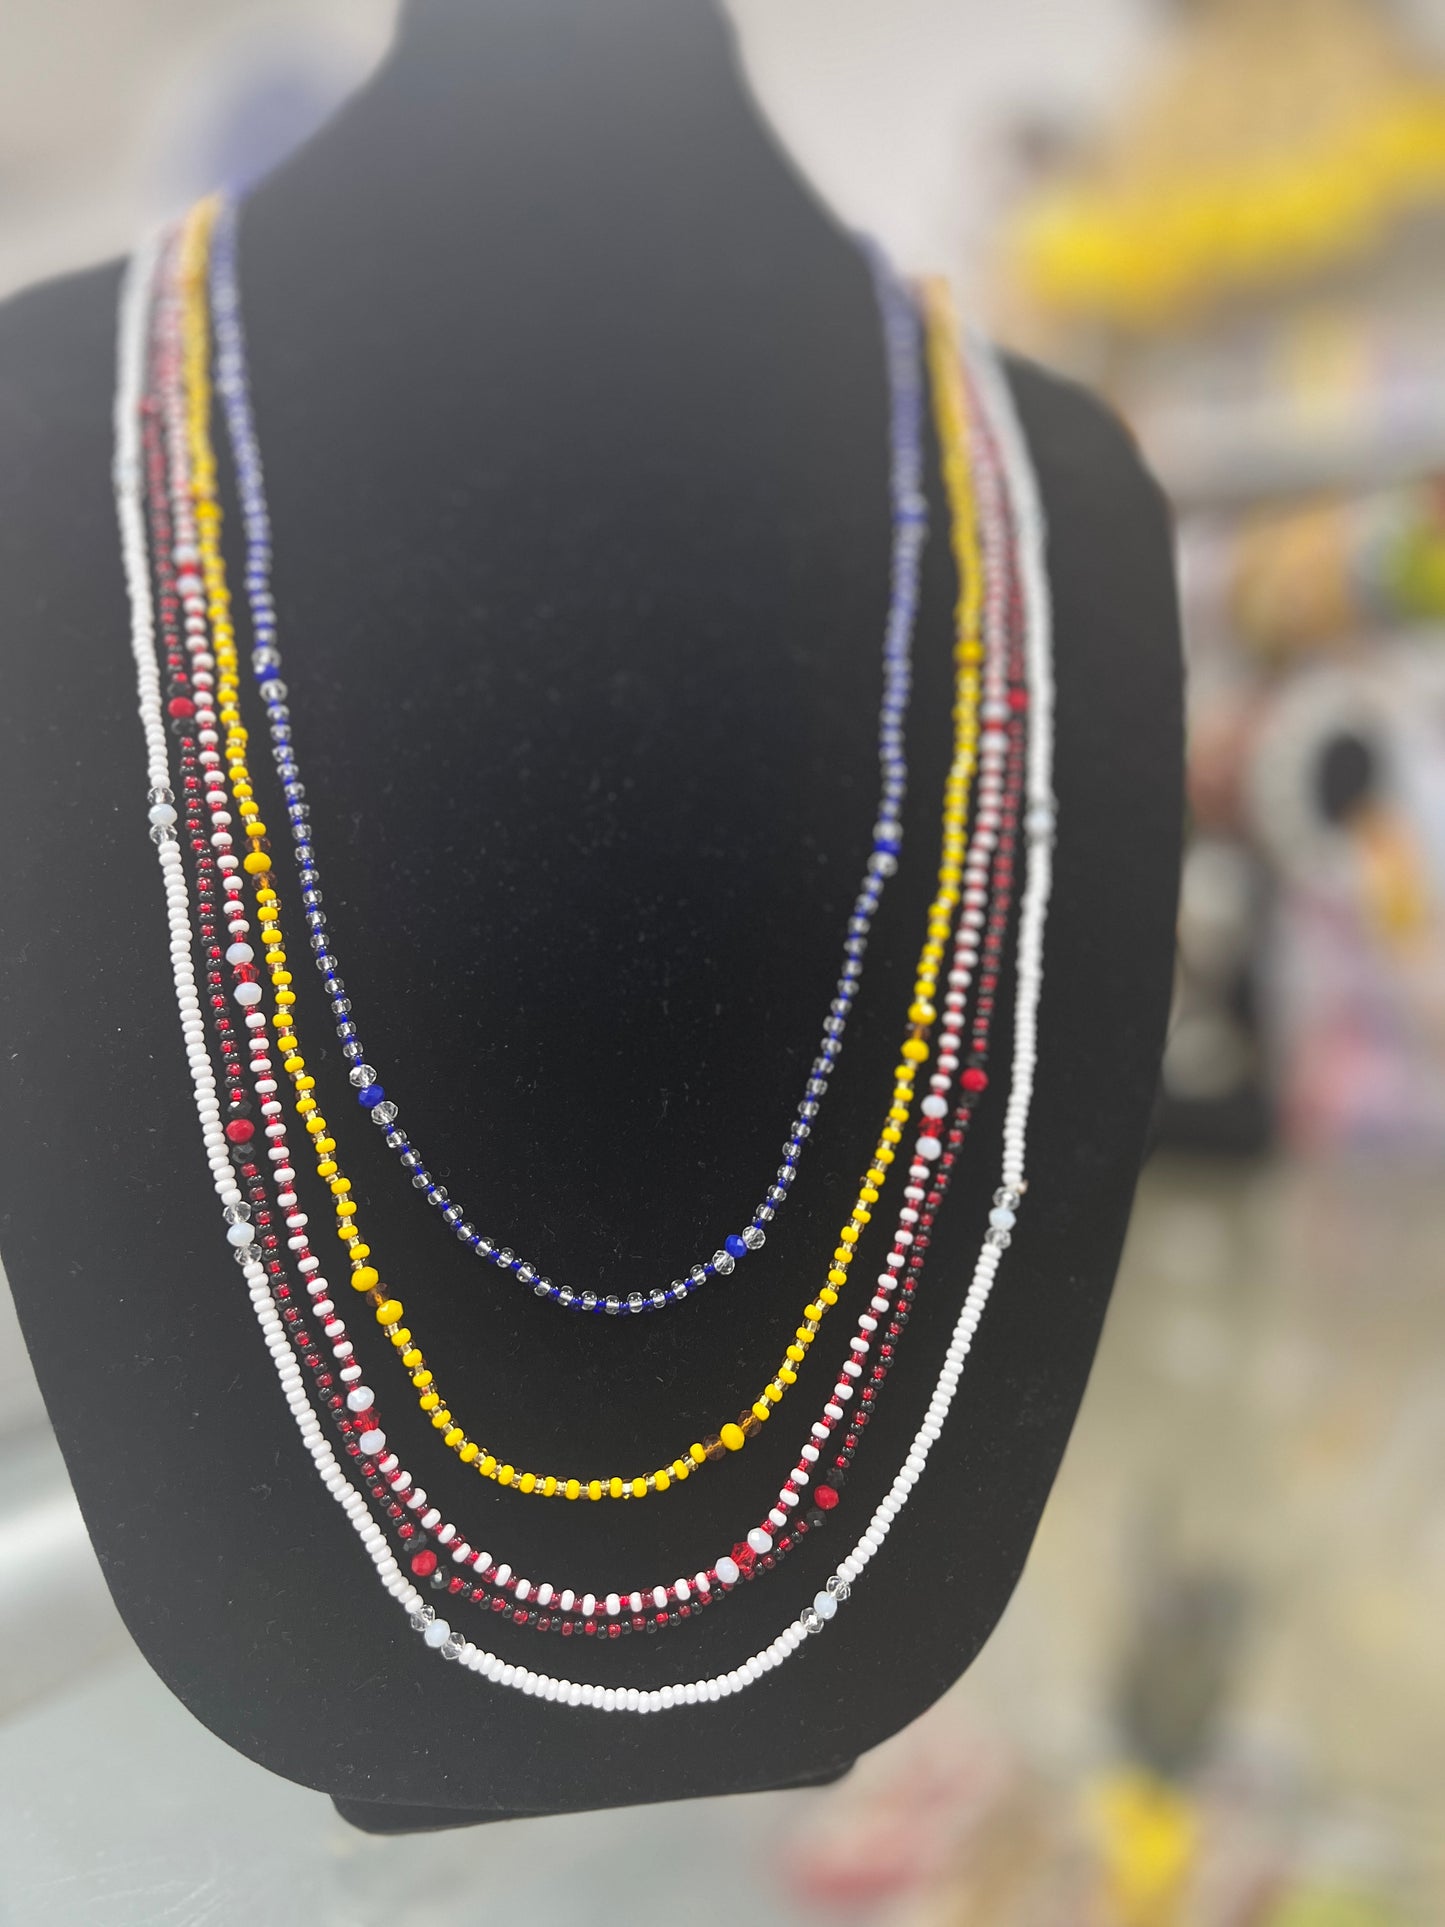 Collares de Santo Para Gala / Elekes or Beaded Necklace For Gala